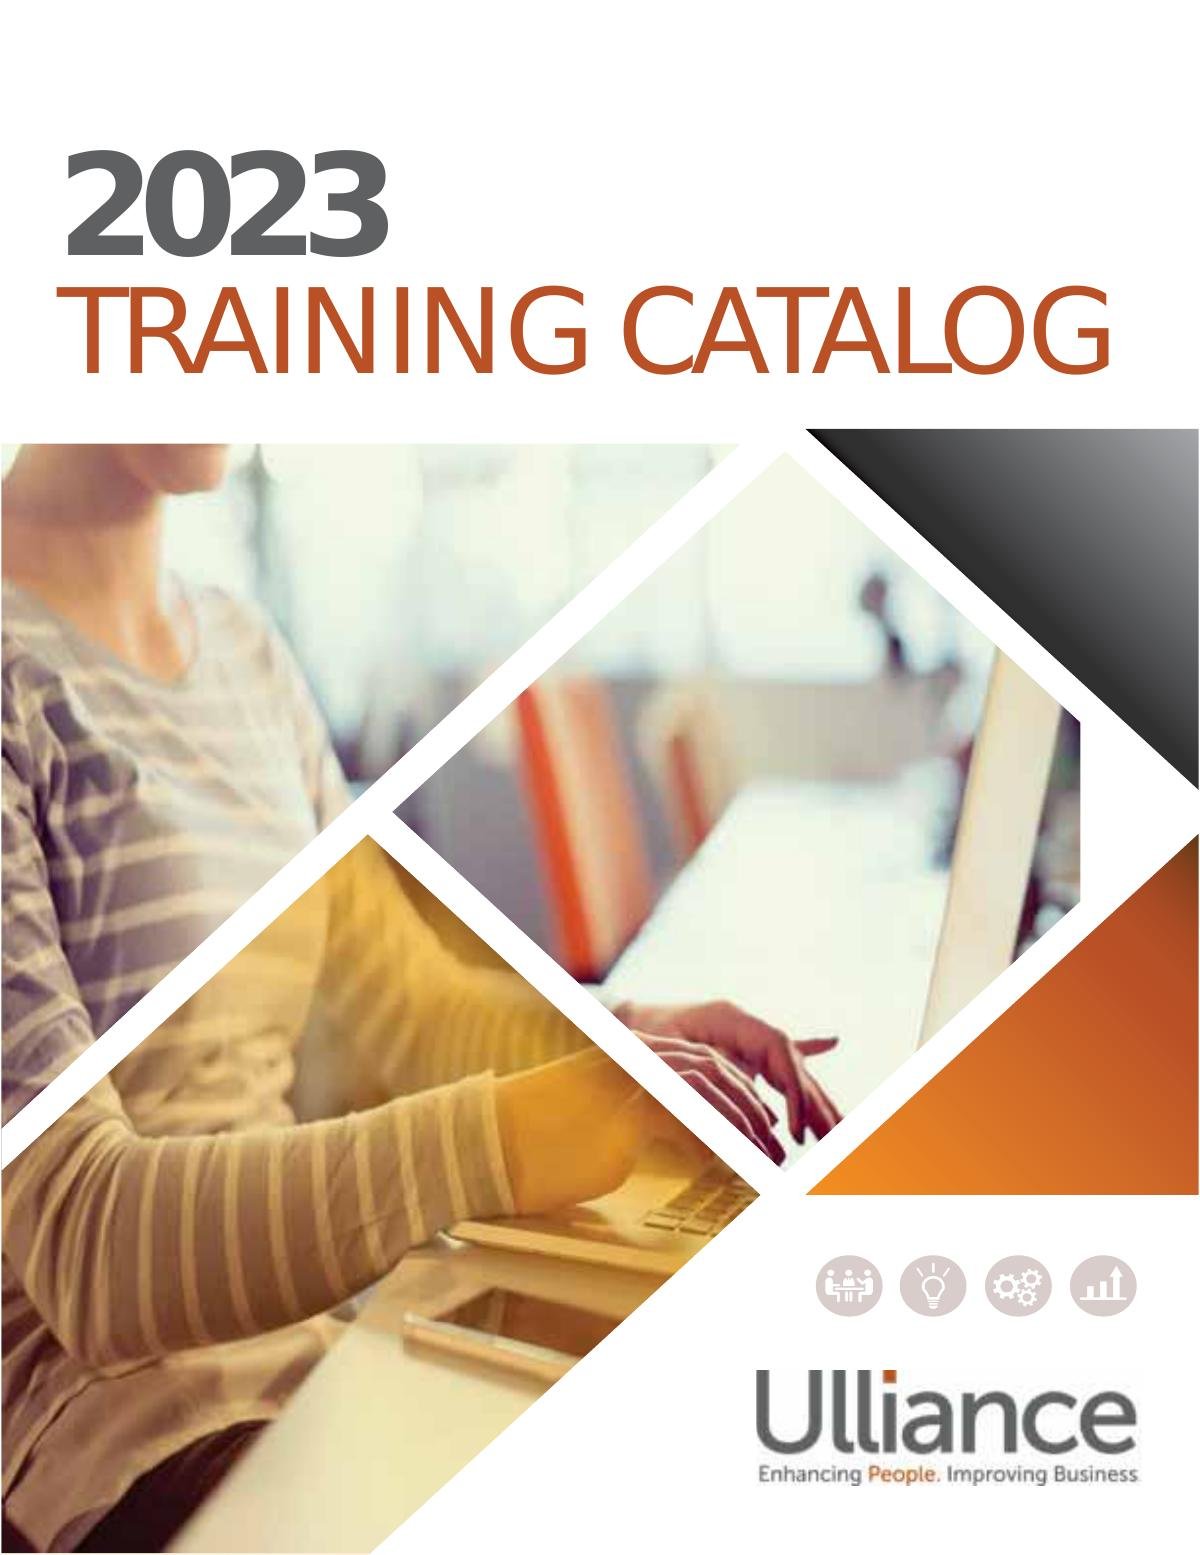 Ulliance Employee and Leadership Training Catalog